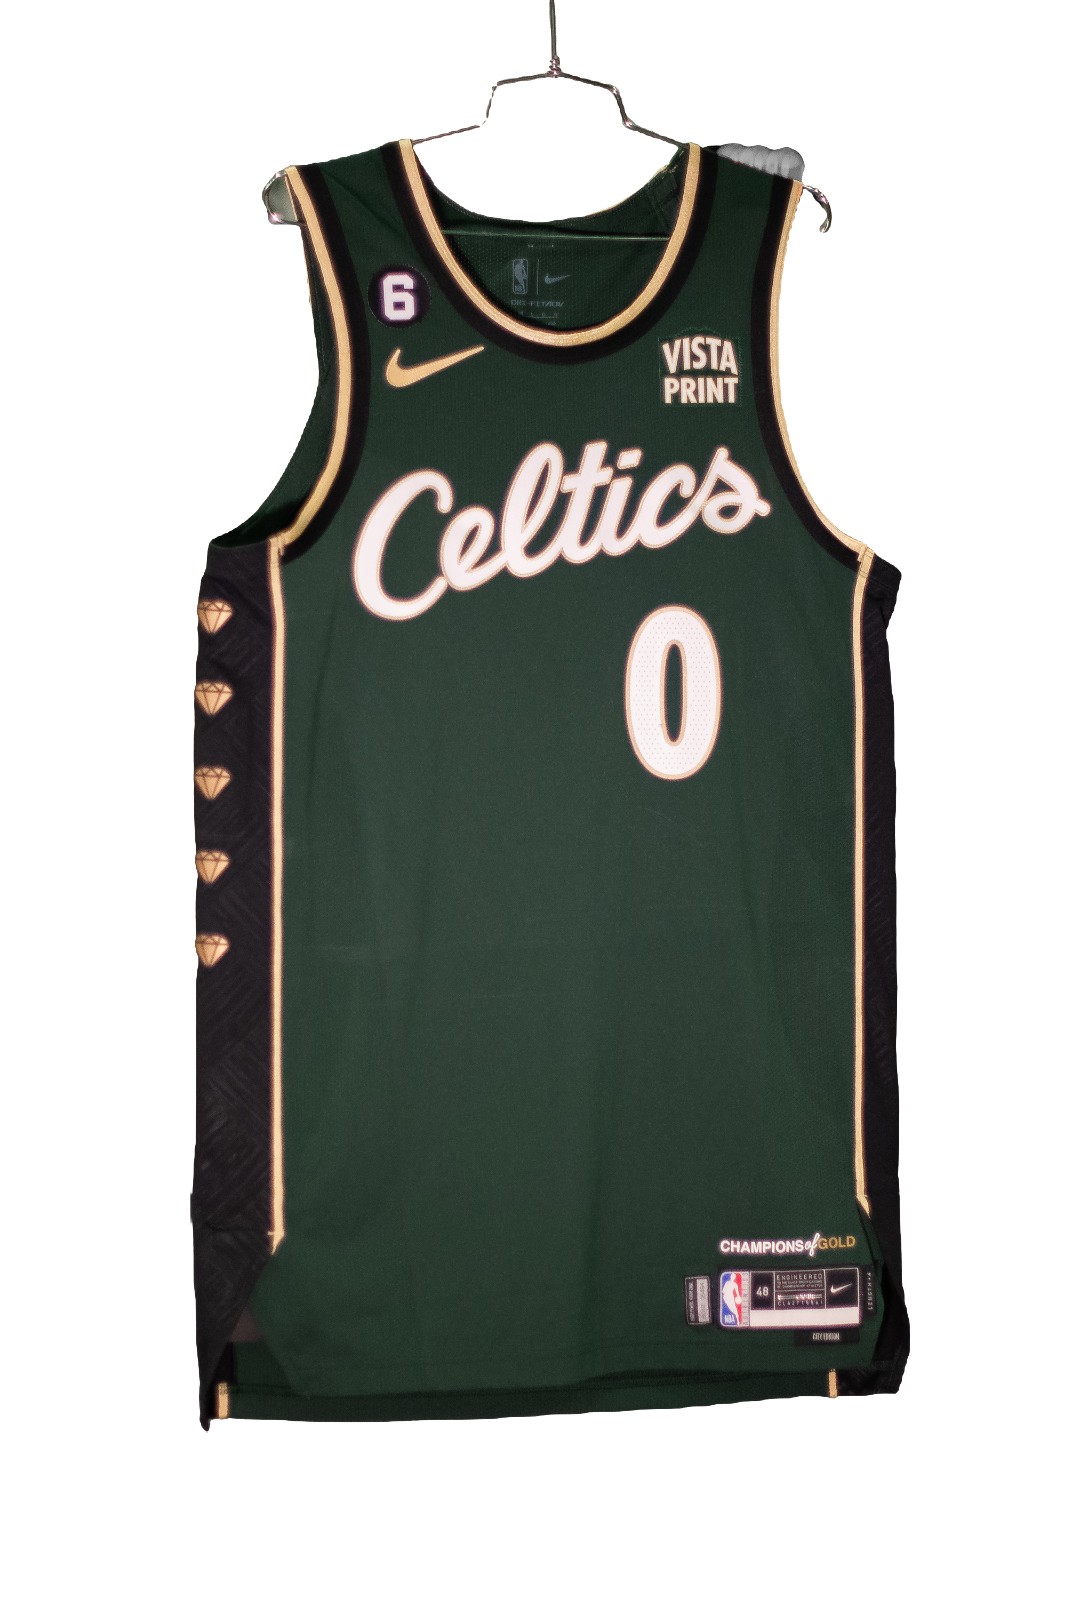 Boston Celtics 2022-23 City Edition Jersey Revealed - Pays Tribute